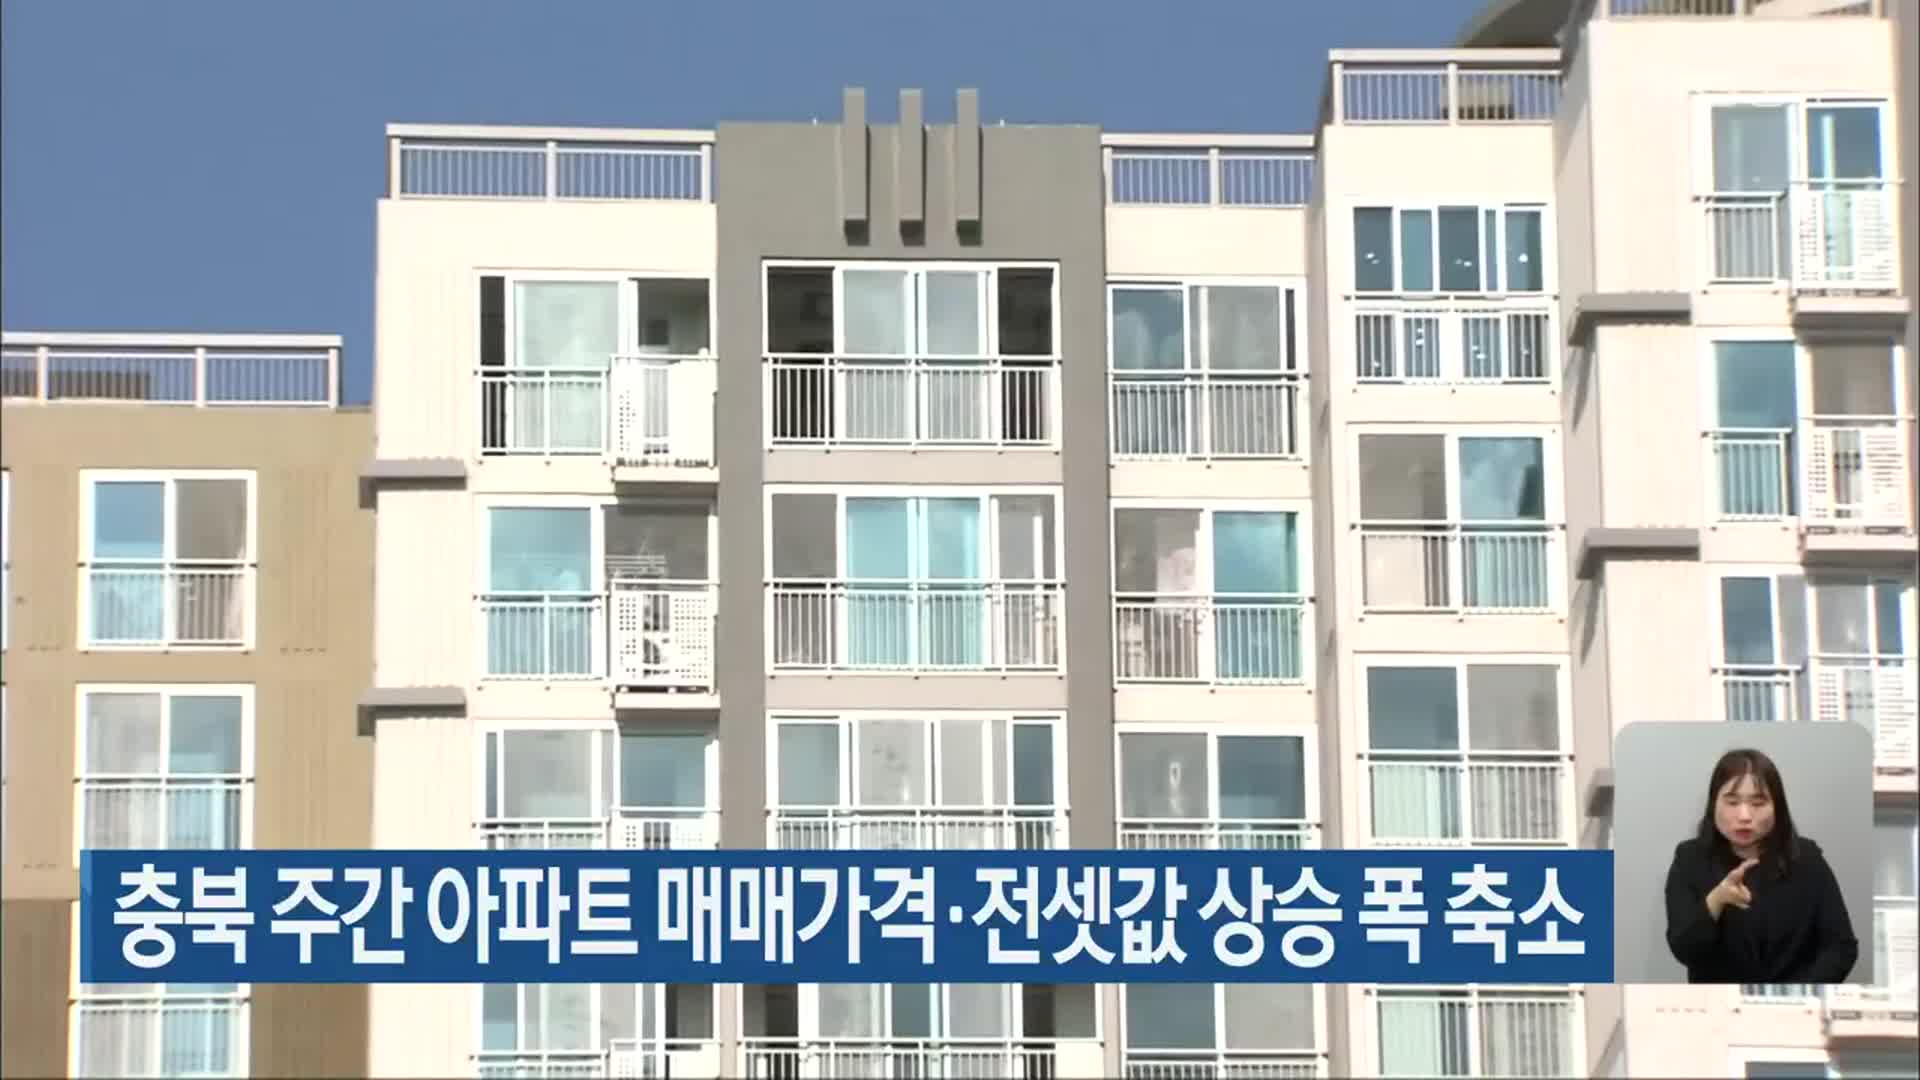 충북 주간 아파트 매매가격·전셋값 상승 폭 축소